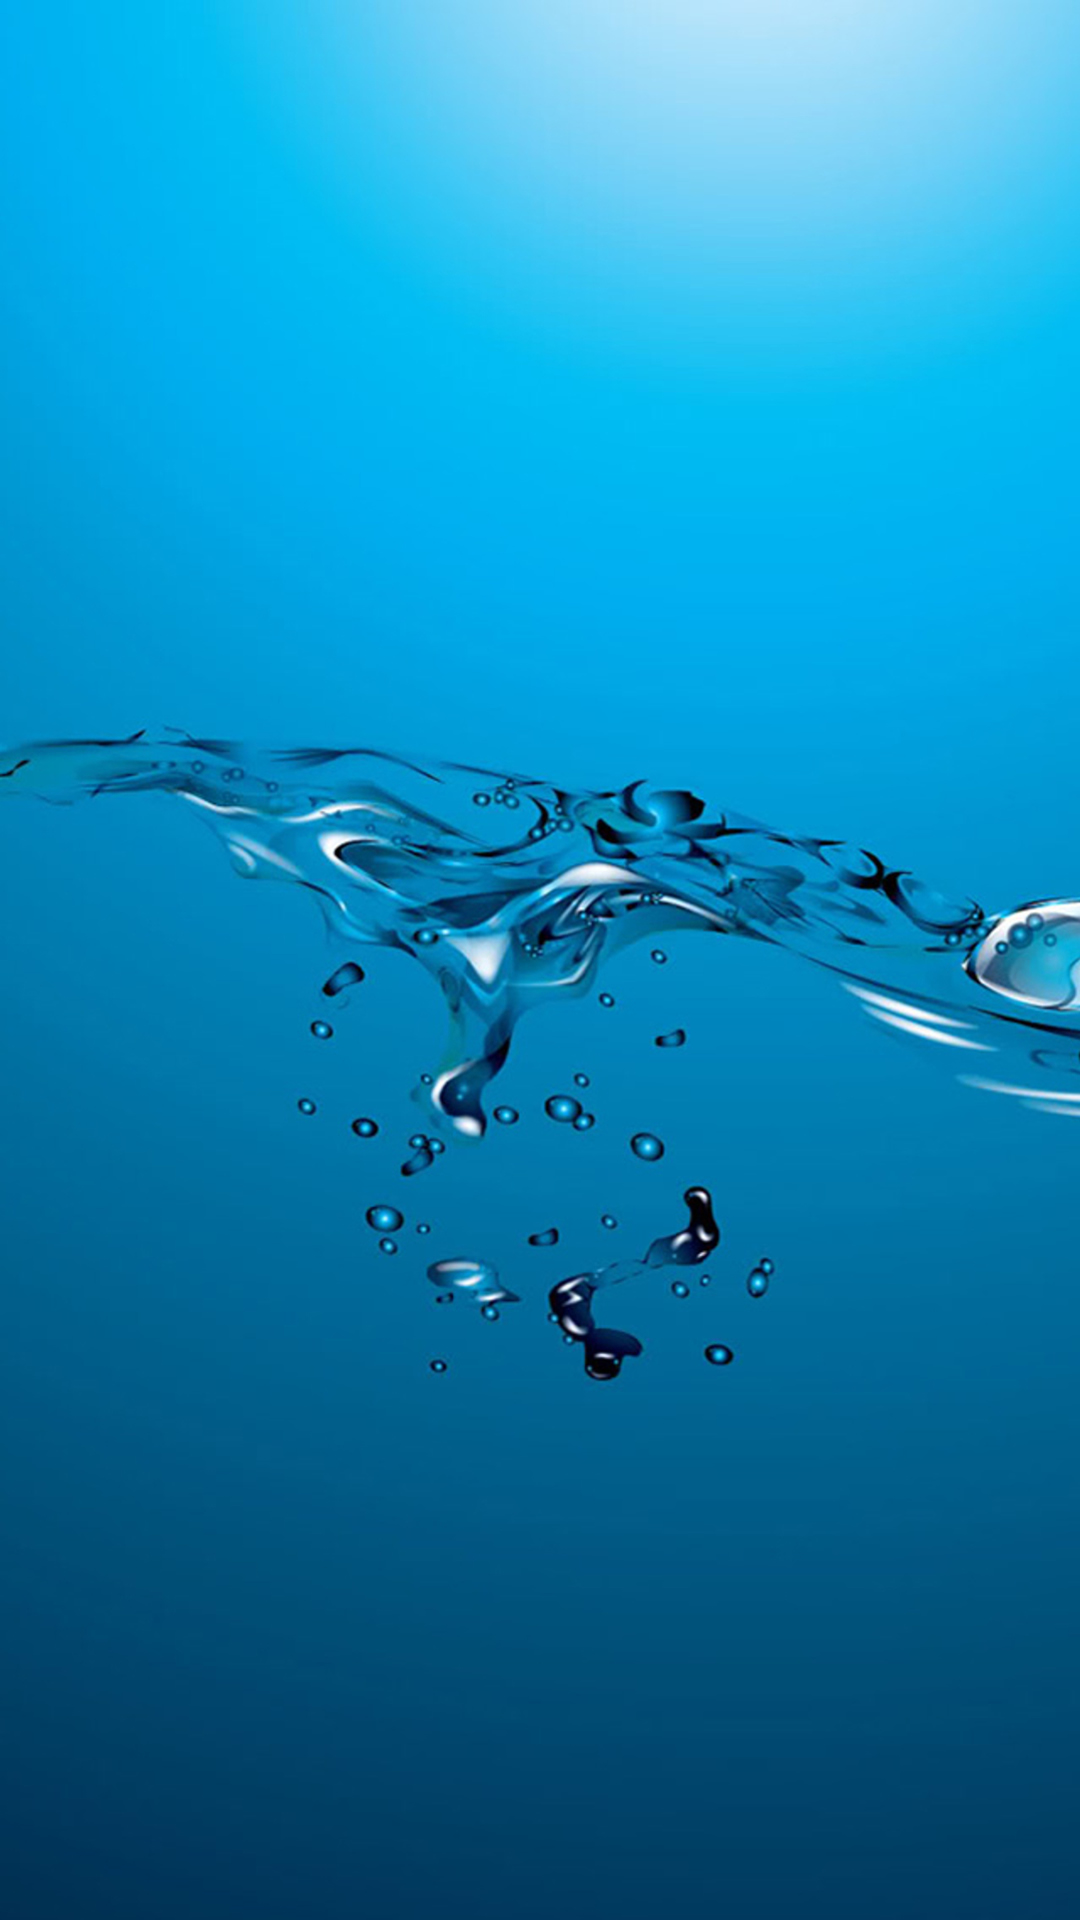 Abstract Ocean Water Splash iPhone Wallpaper